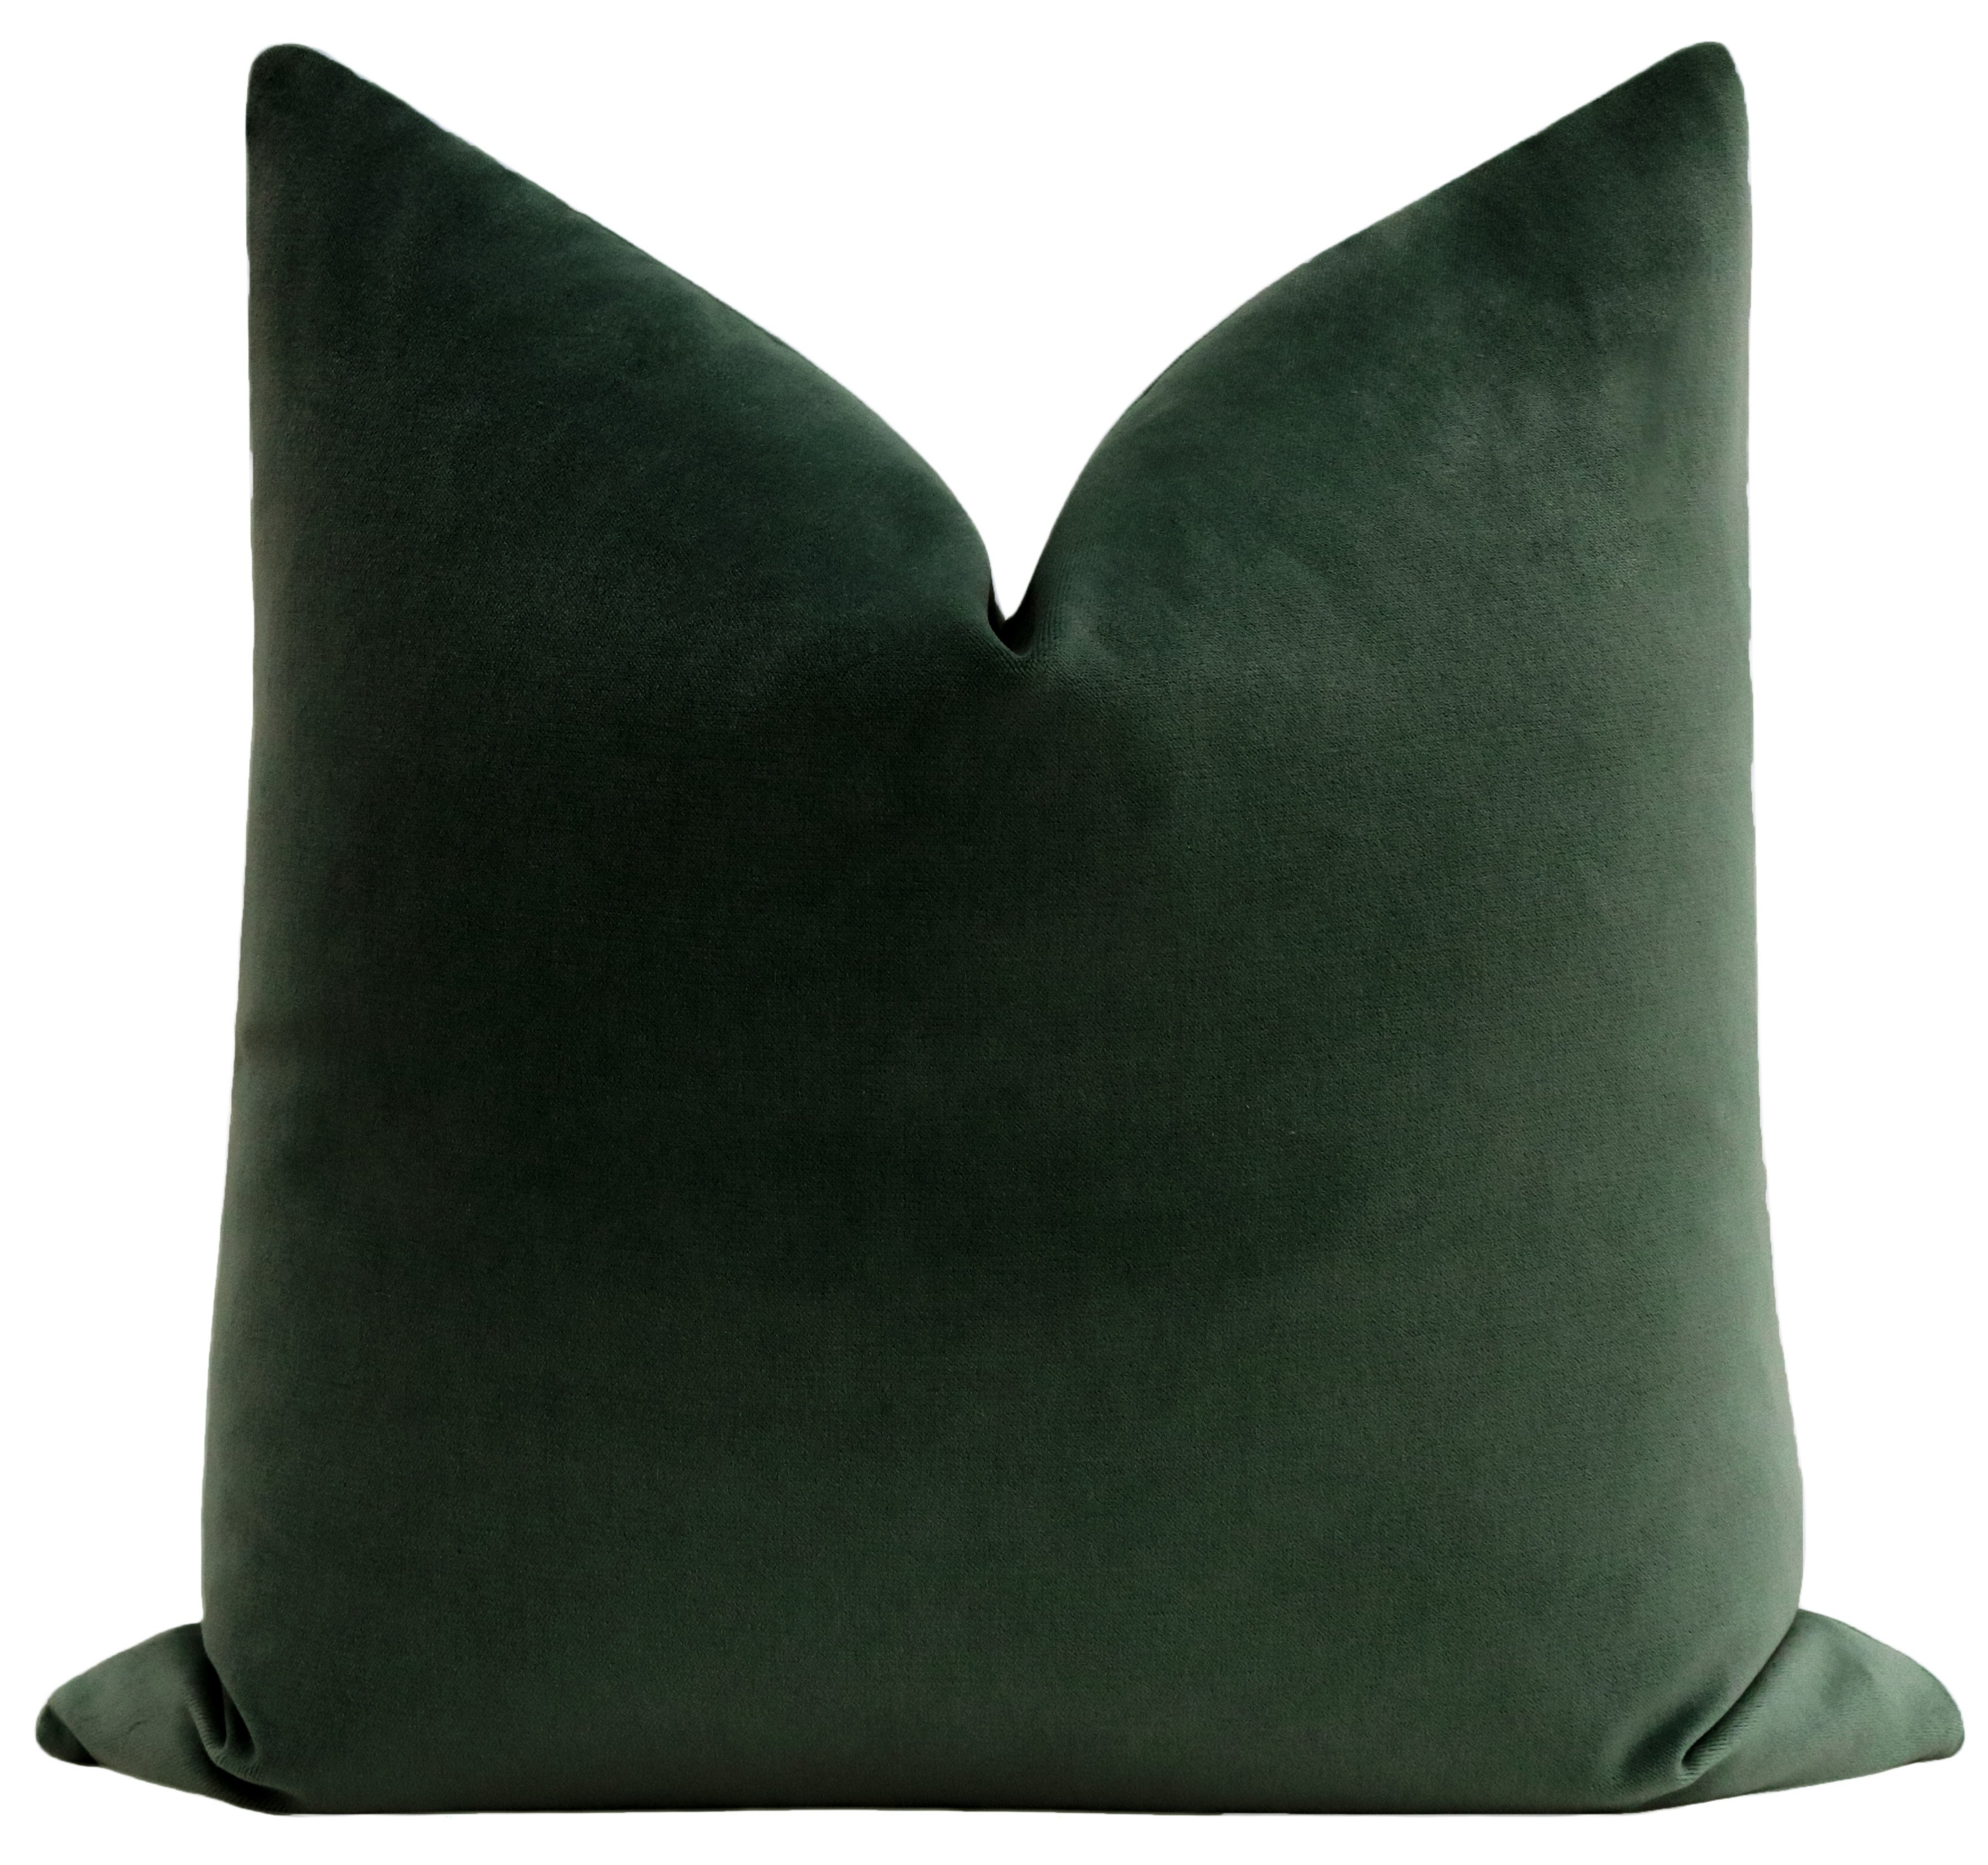 Society Velvet Pillow Cover, Emerald, 22" x 22" Pillow Cover - Little Design Company